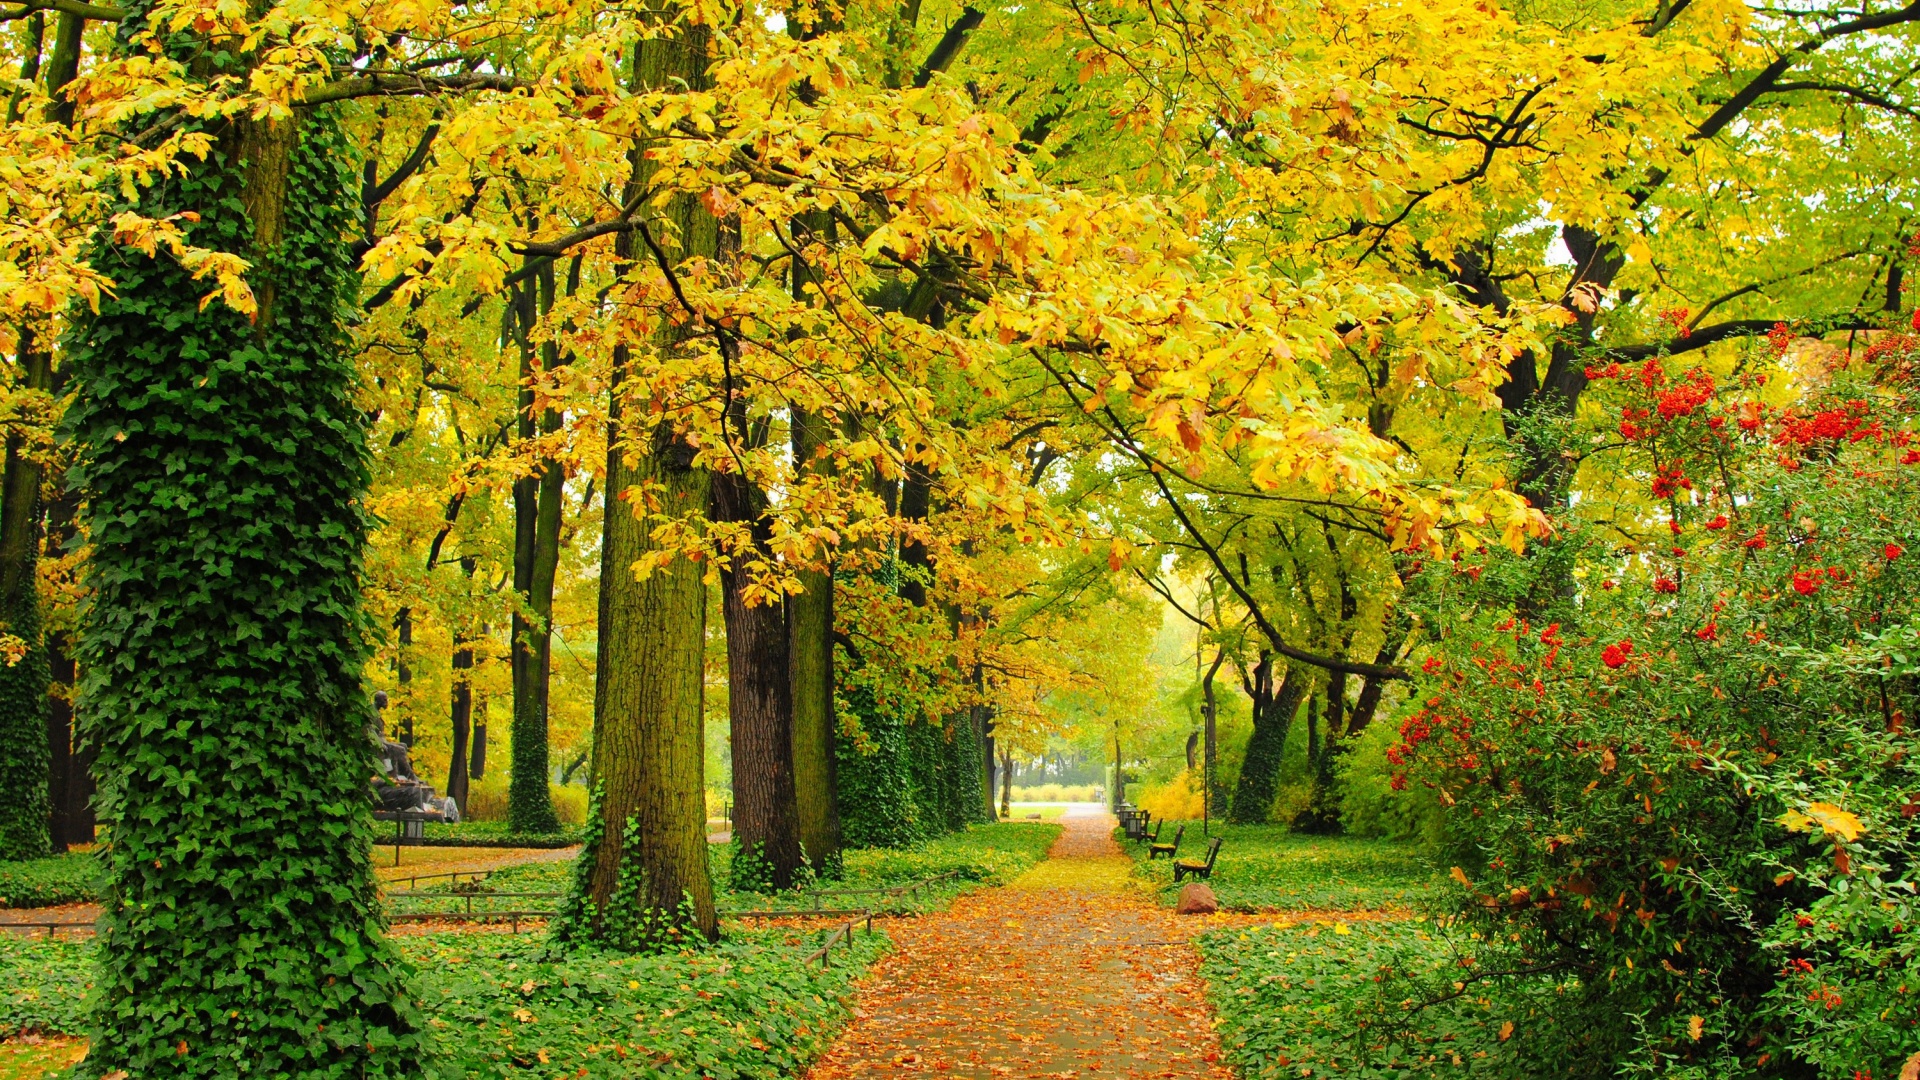 自然公园,树木,树叶,长凳,树叶,小路,秋天的小巷风景桌面壁纸